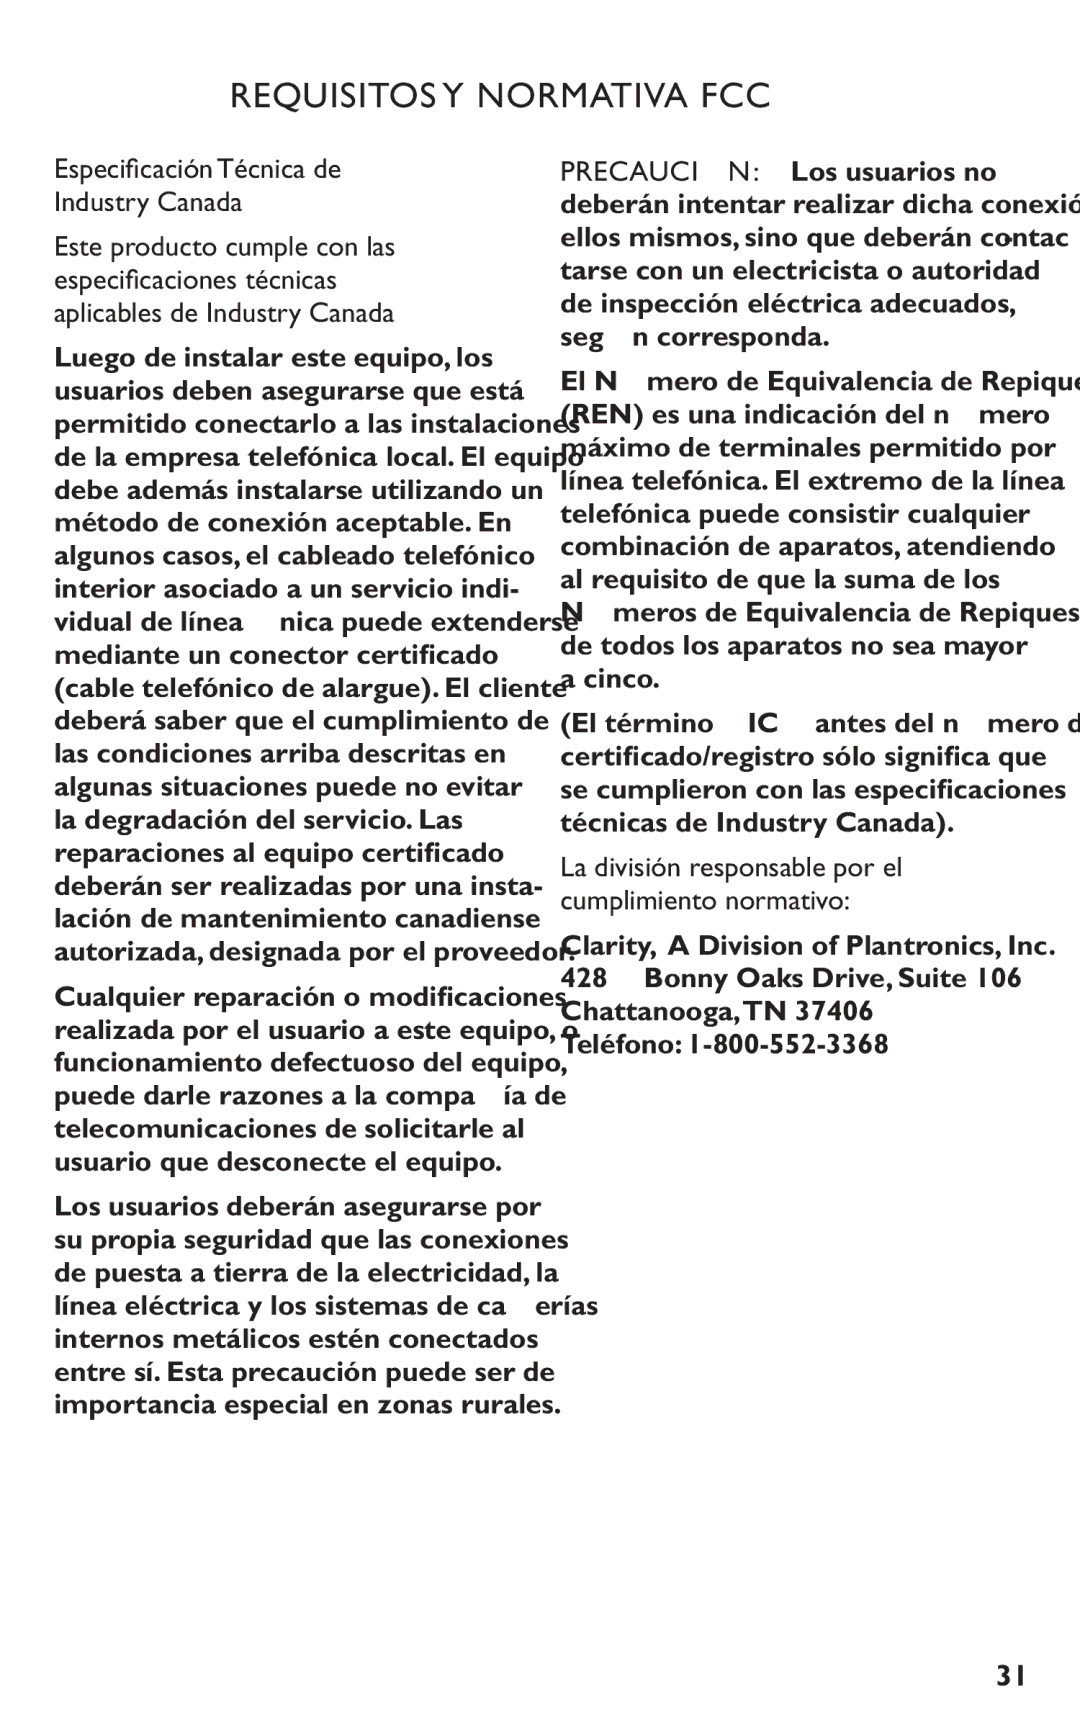 Clarity C4230HS Especiﬁcación Técnica de Industry Canada, Cinco, La división responsable por el cumplimiento normativo 